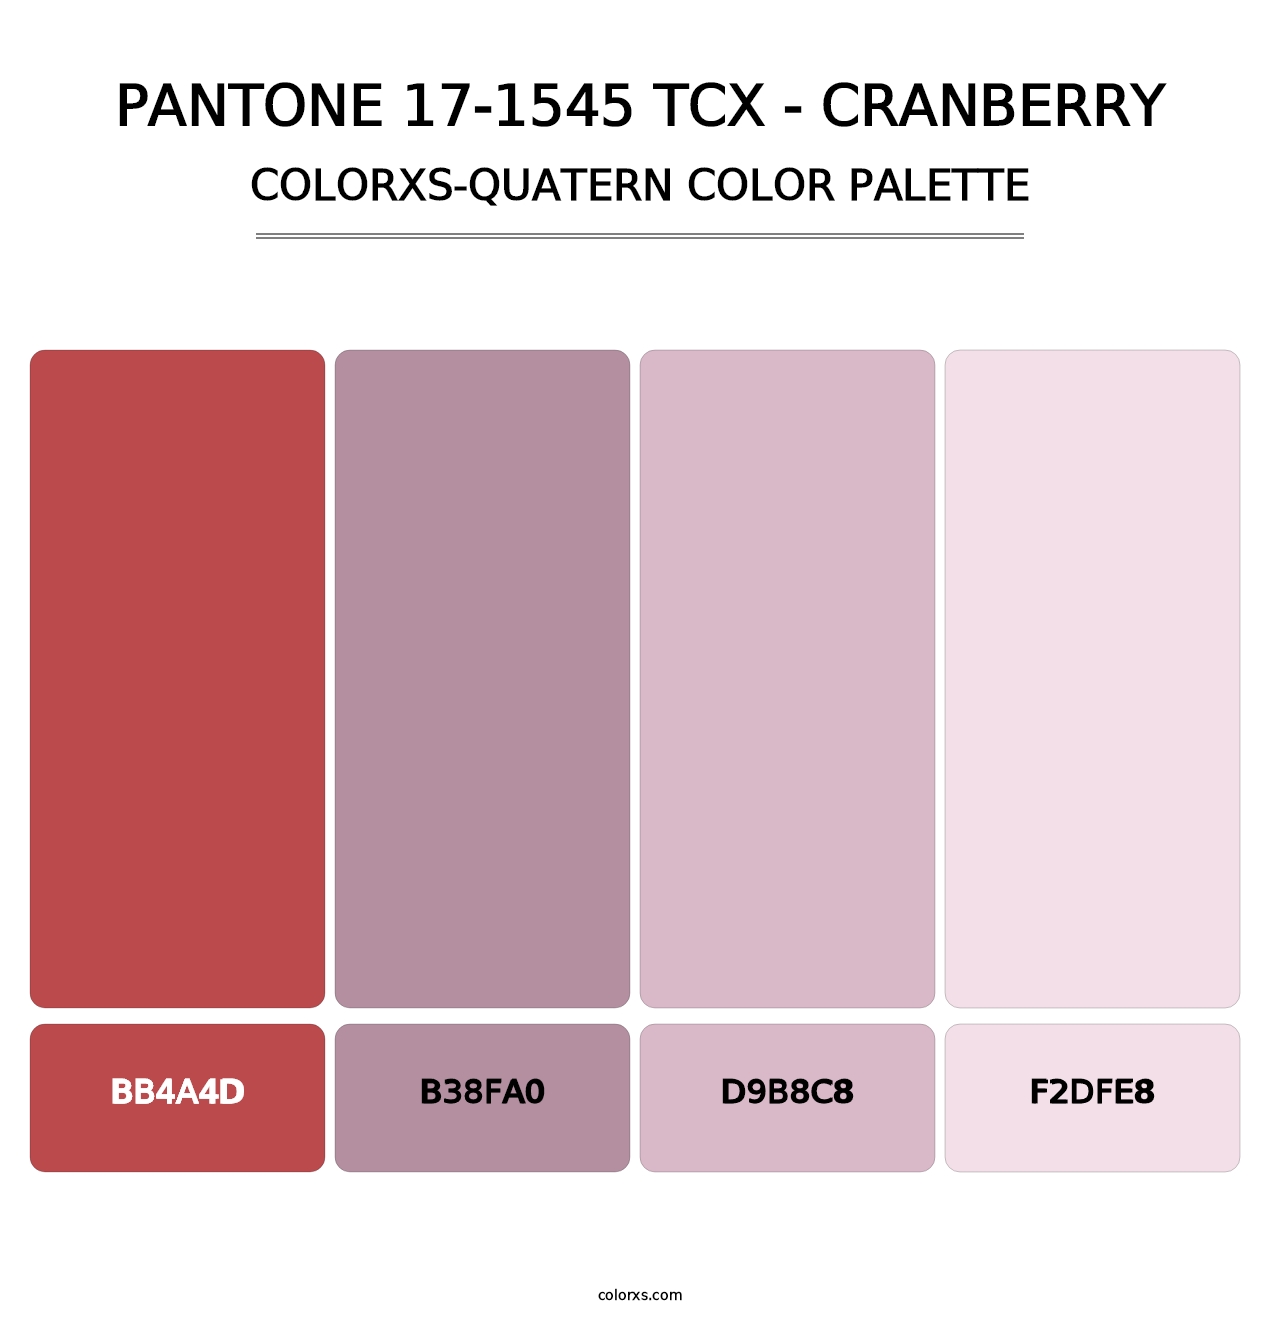 PANTONE 17-1545 TCX - Cranberry - Colorxs Quatern Palette